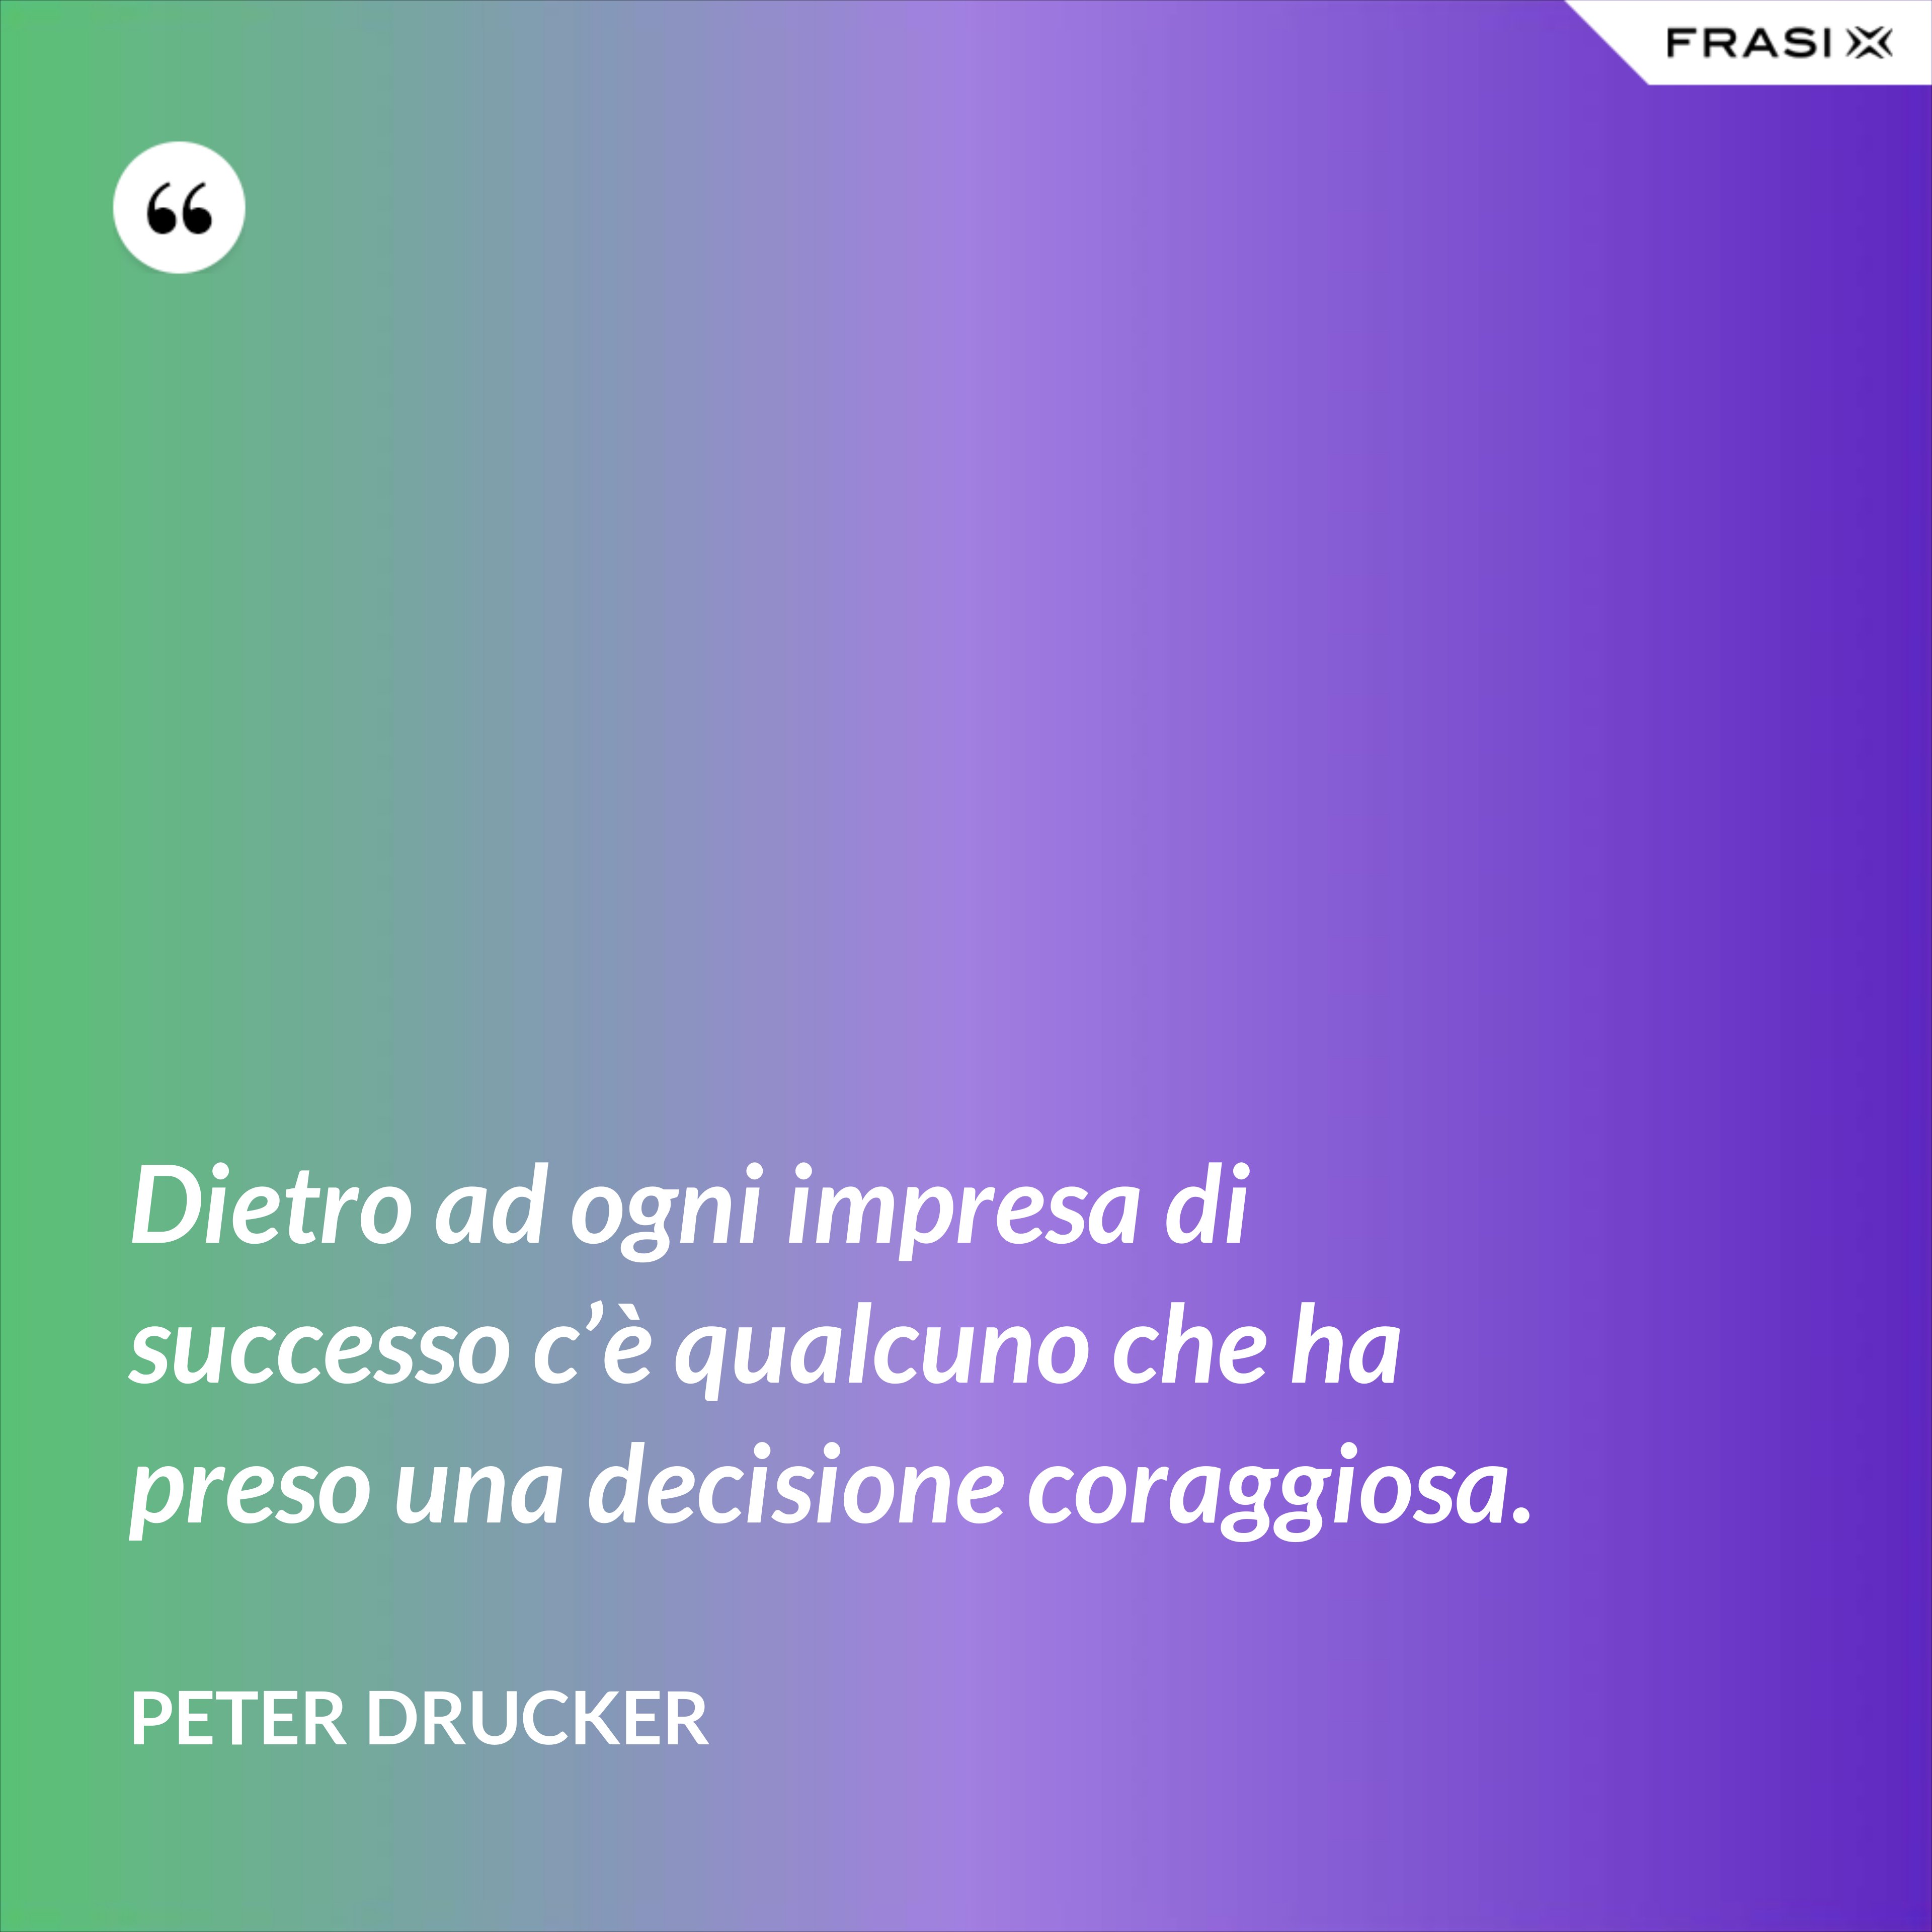 Dietro ad ogni impresa di successo c’è qualcuno che ha preso una decisione coraggiosa. - Peter Drucker